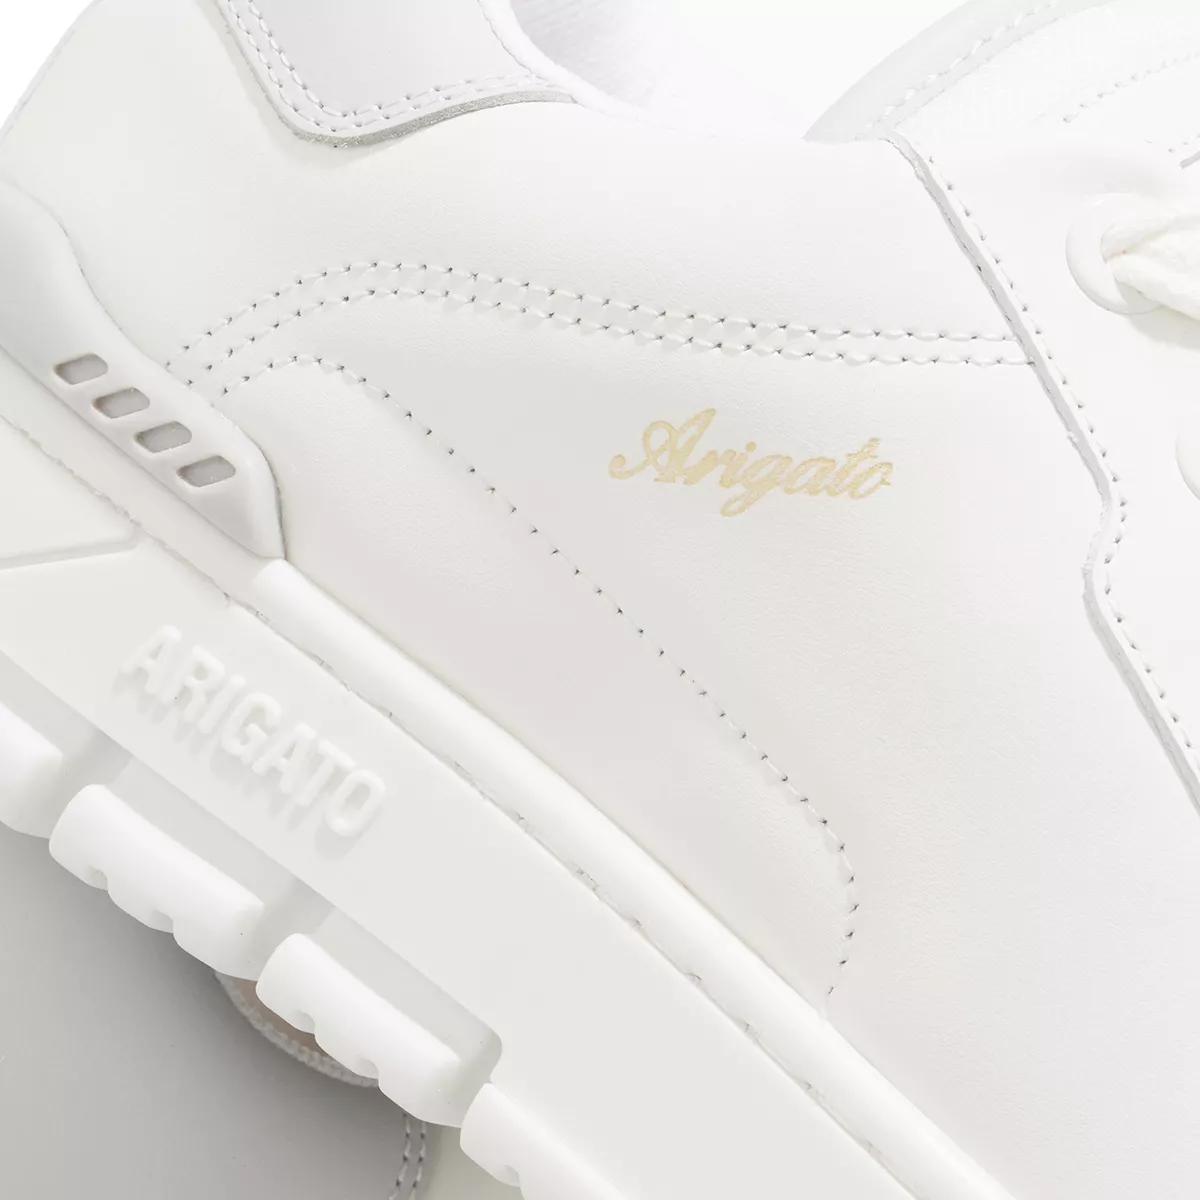 Axel Arigato Sneakers - Area Haze Sneaker - Gr. 38 (EU) - in Weiß - für Damen von Axel Arigato